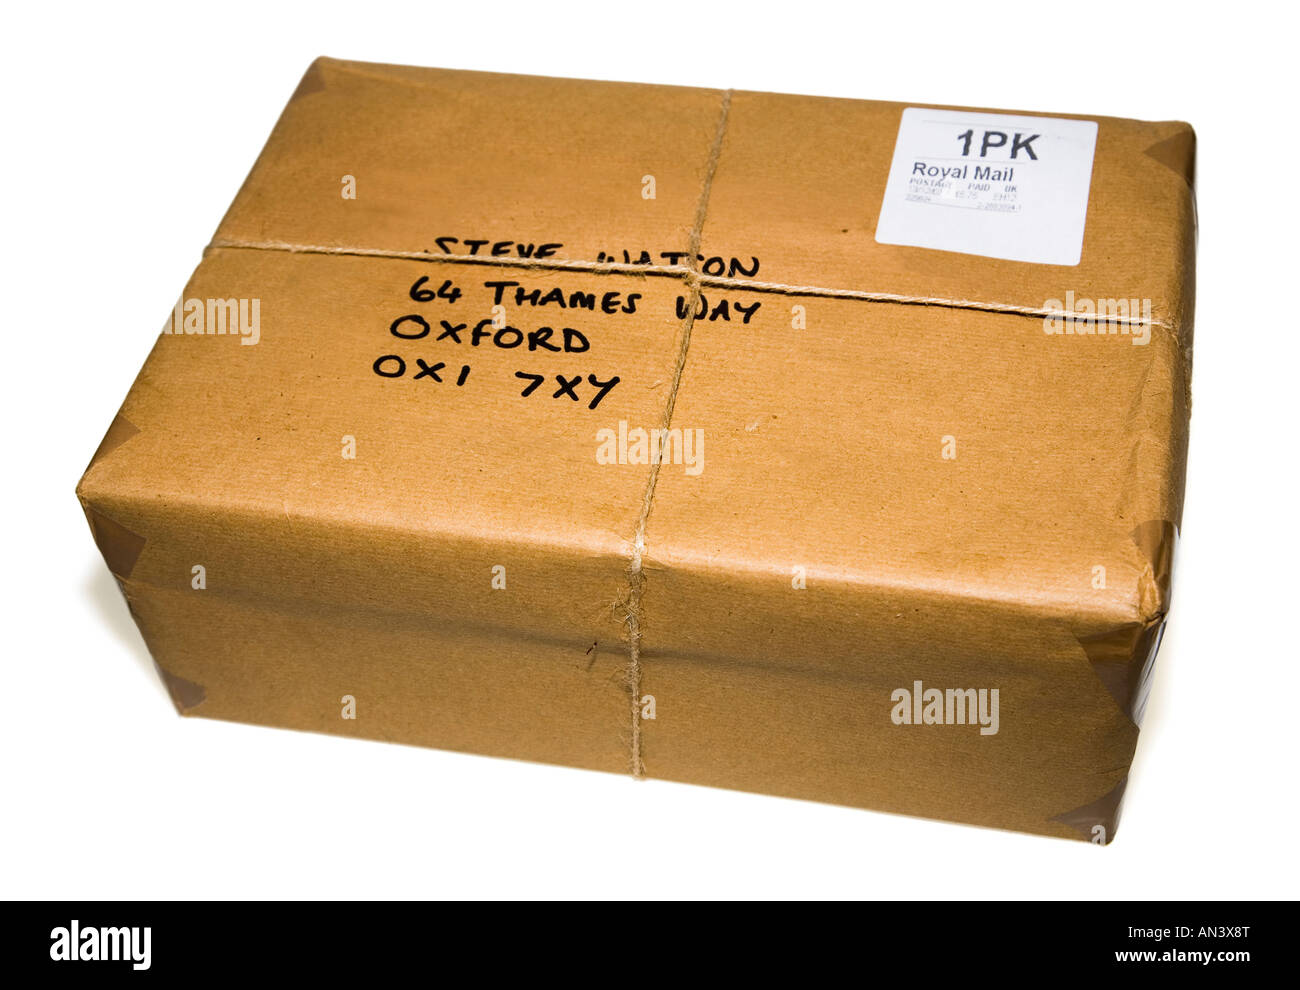 Traditionelle Paket eingepackt in Packpapier und String mit Post Zahlung an  eine fiktive Adresse gedruckt Stockfotografie - Alamy